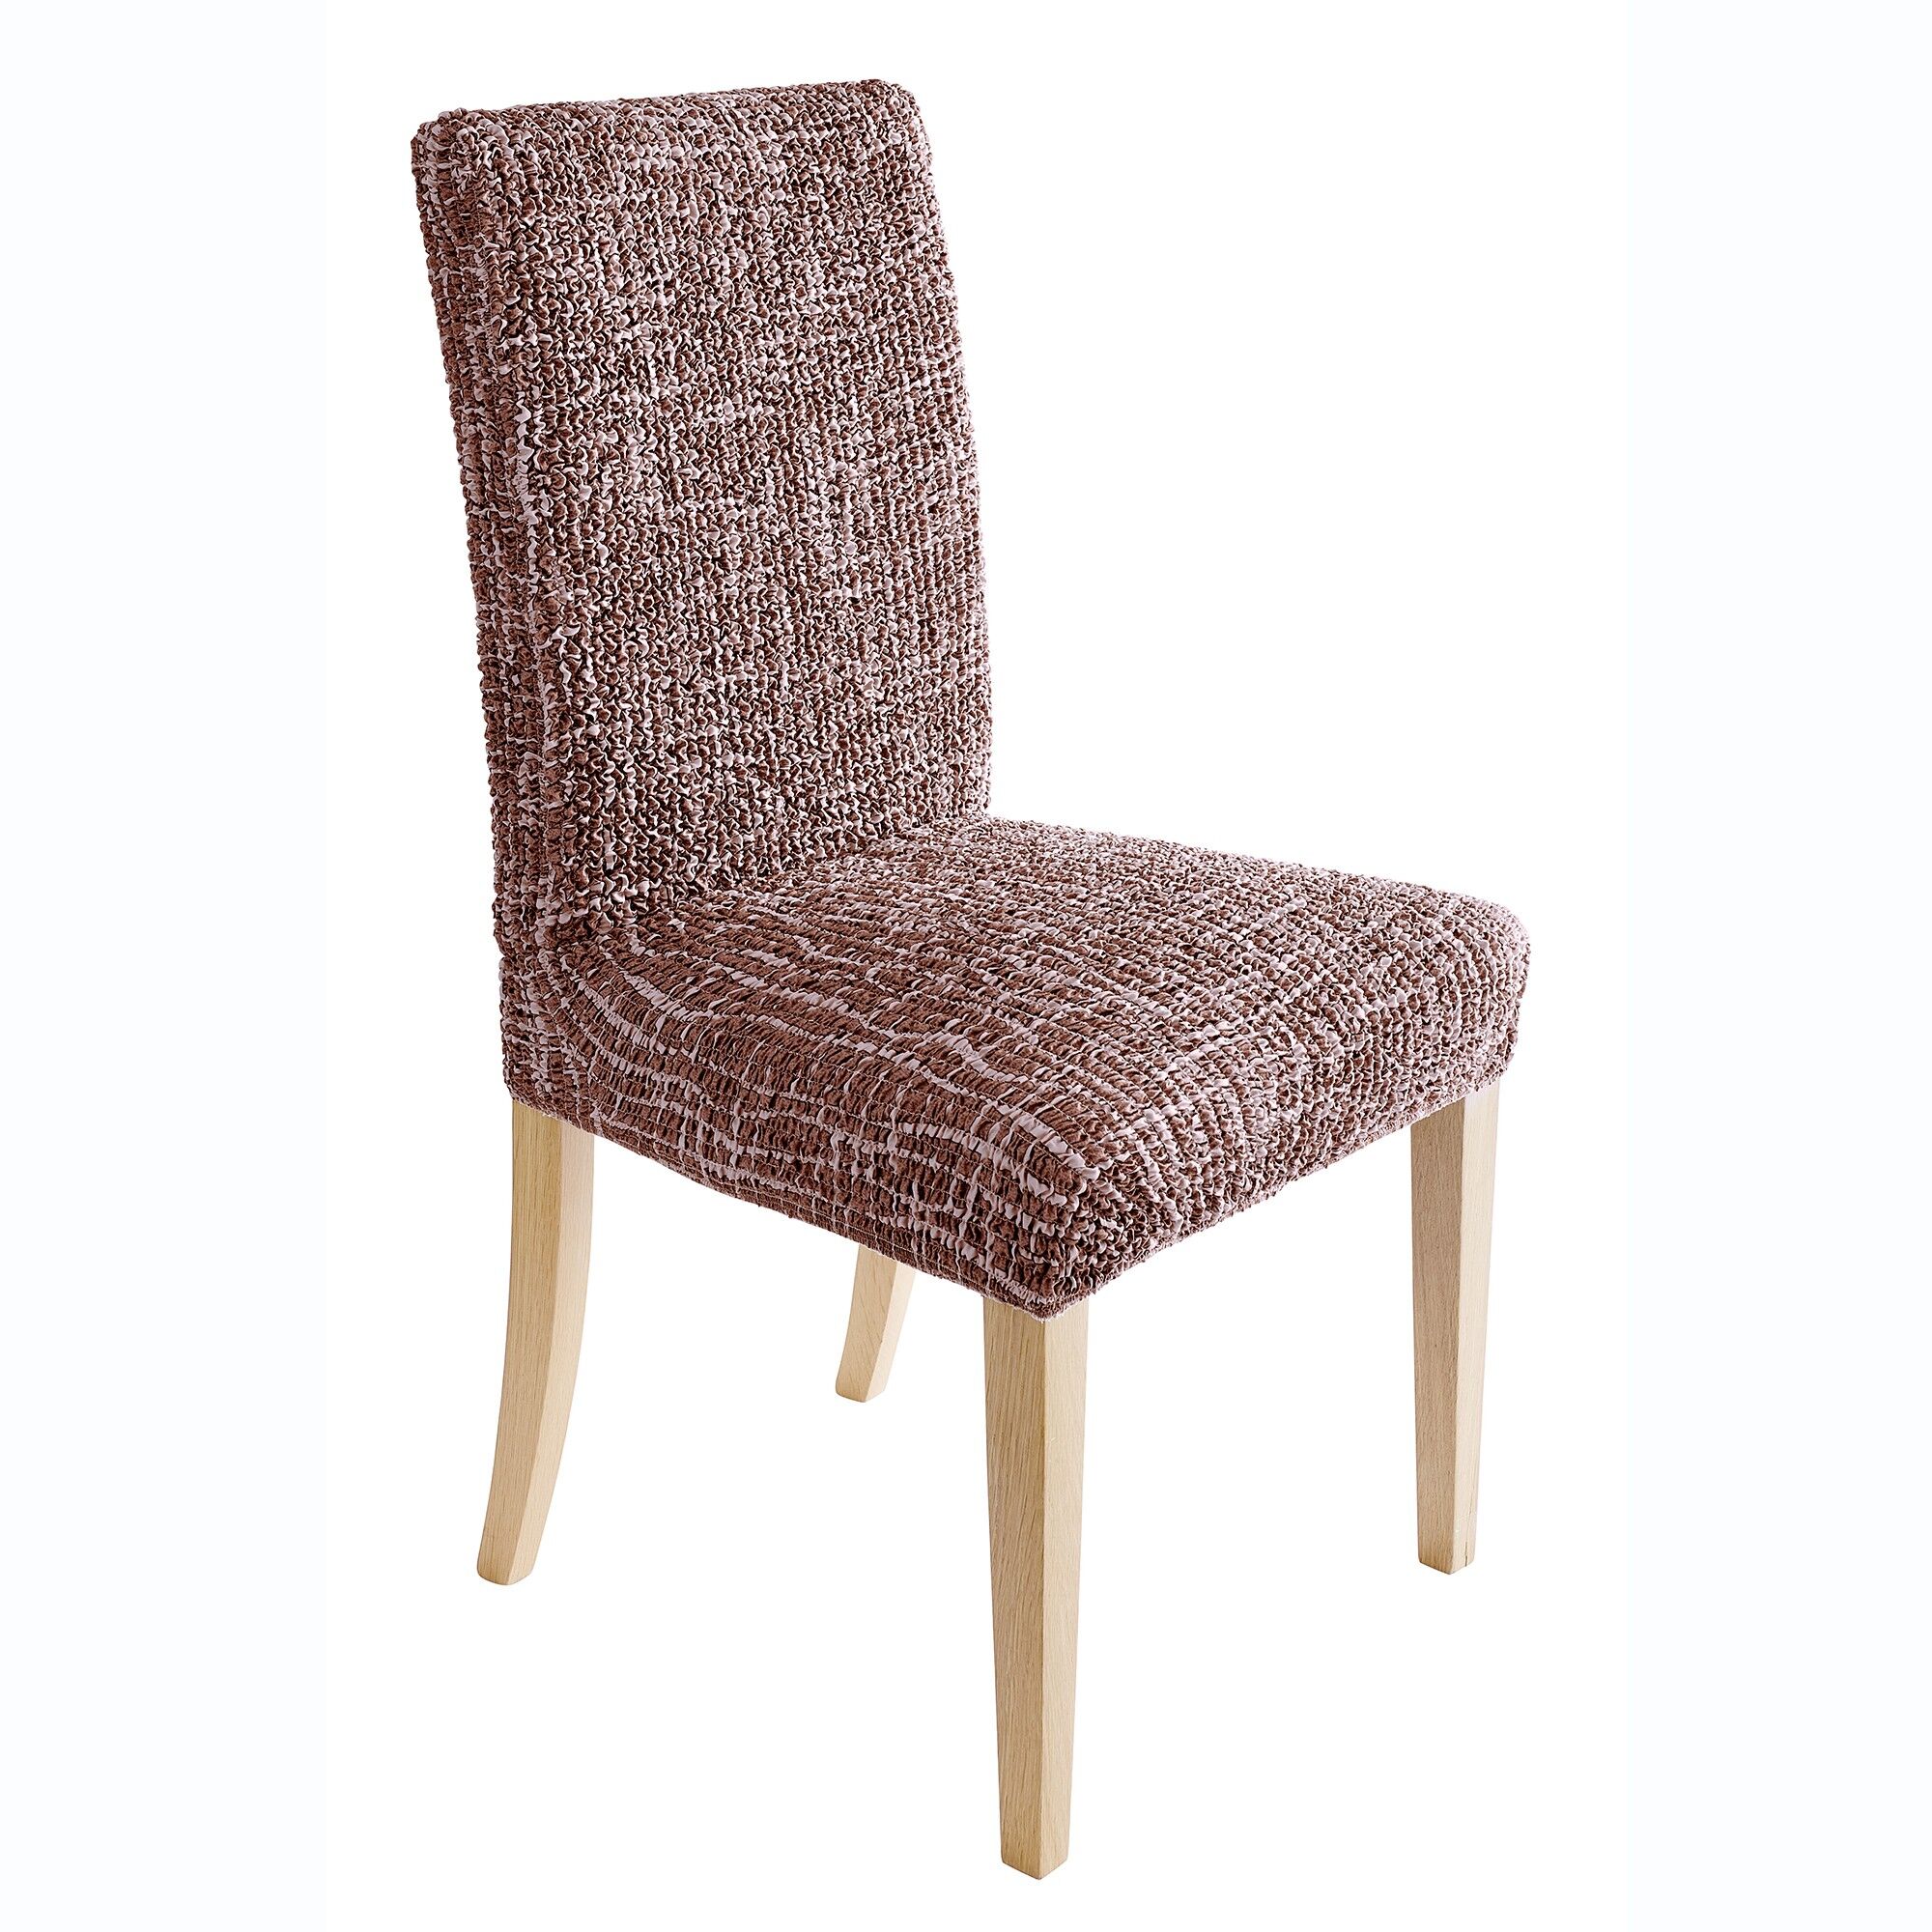 Housse microfibre bi-extensible motifs graphique spéciale chaise - Blancheporte Marron housse de chaise